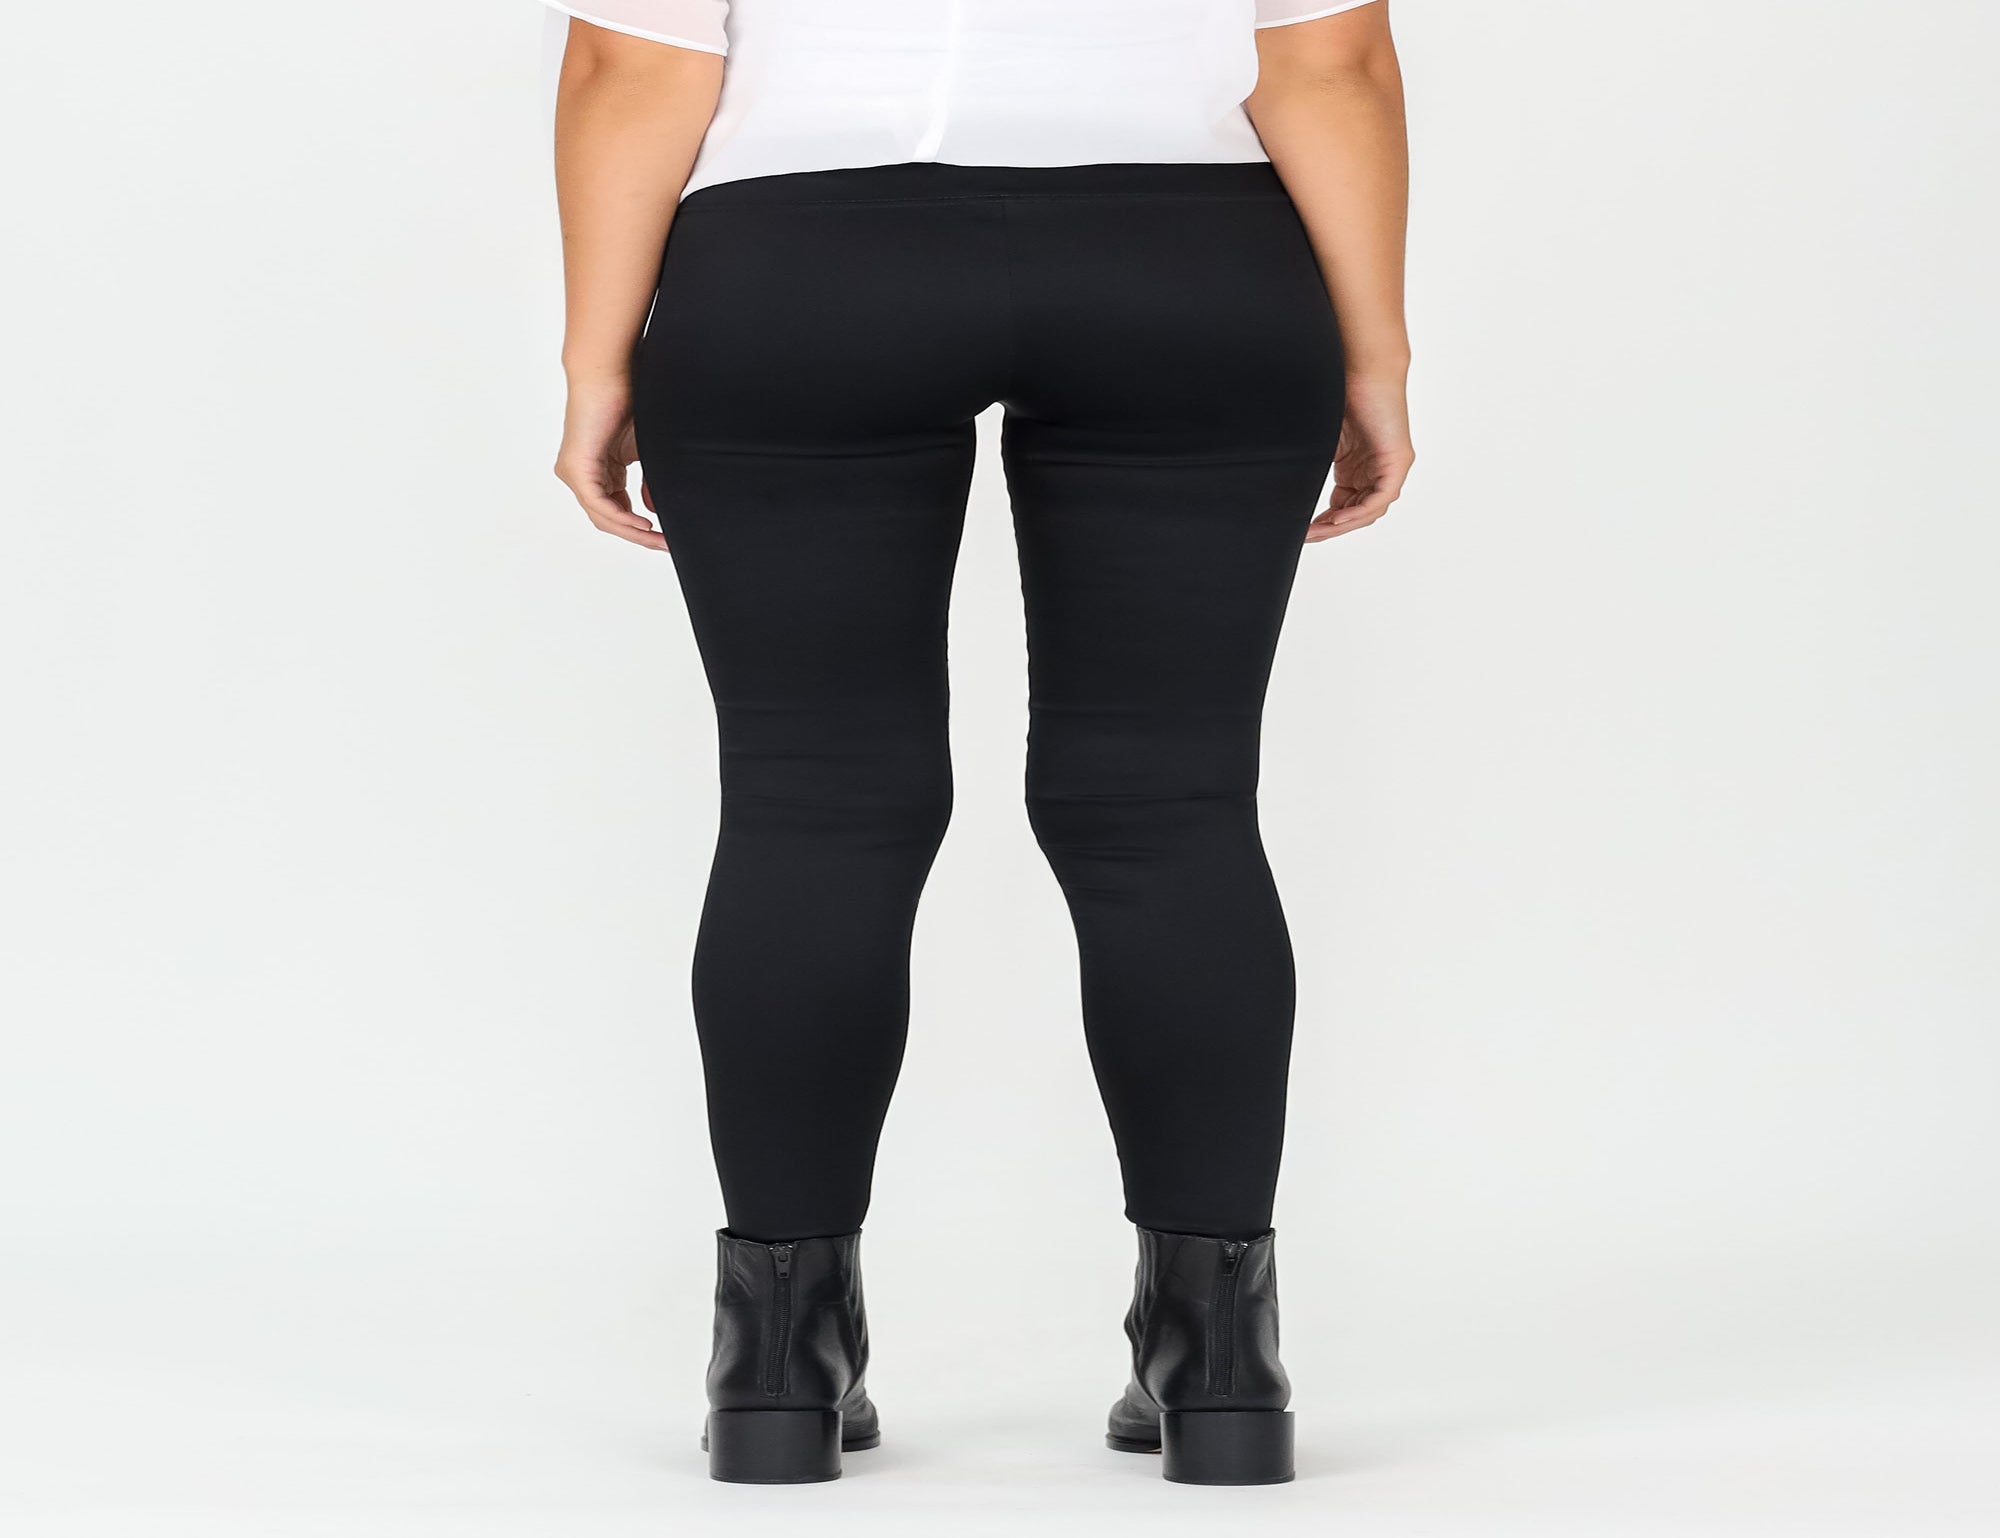 Pull On Satin Legging - Black - Pants - Full Length - Women's